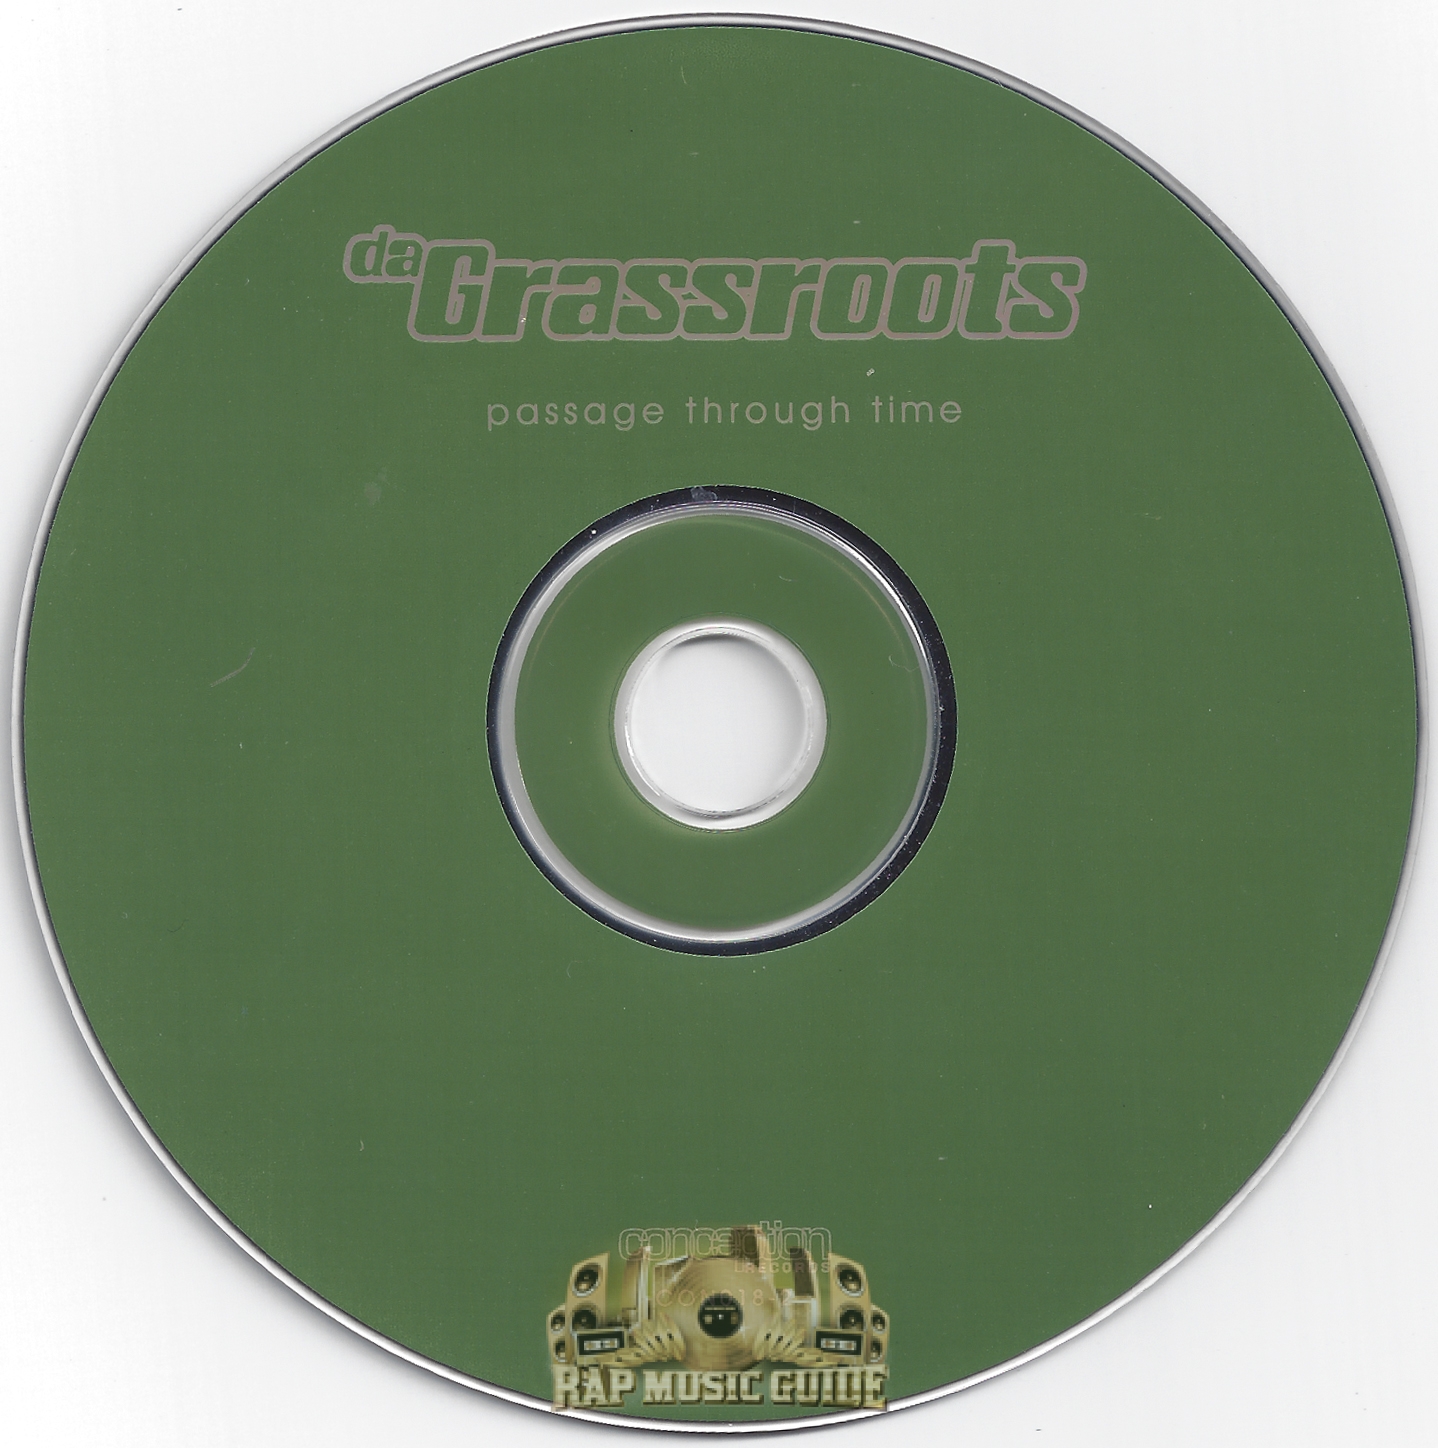 Da Grassroots - Passage Through Time: CD | Rap Music Guide